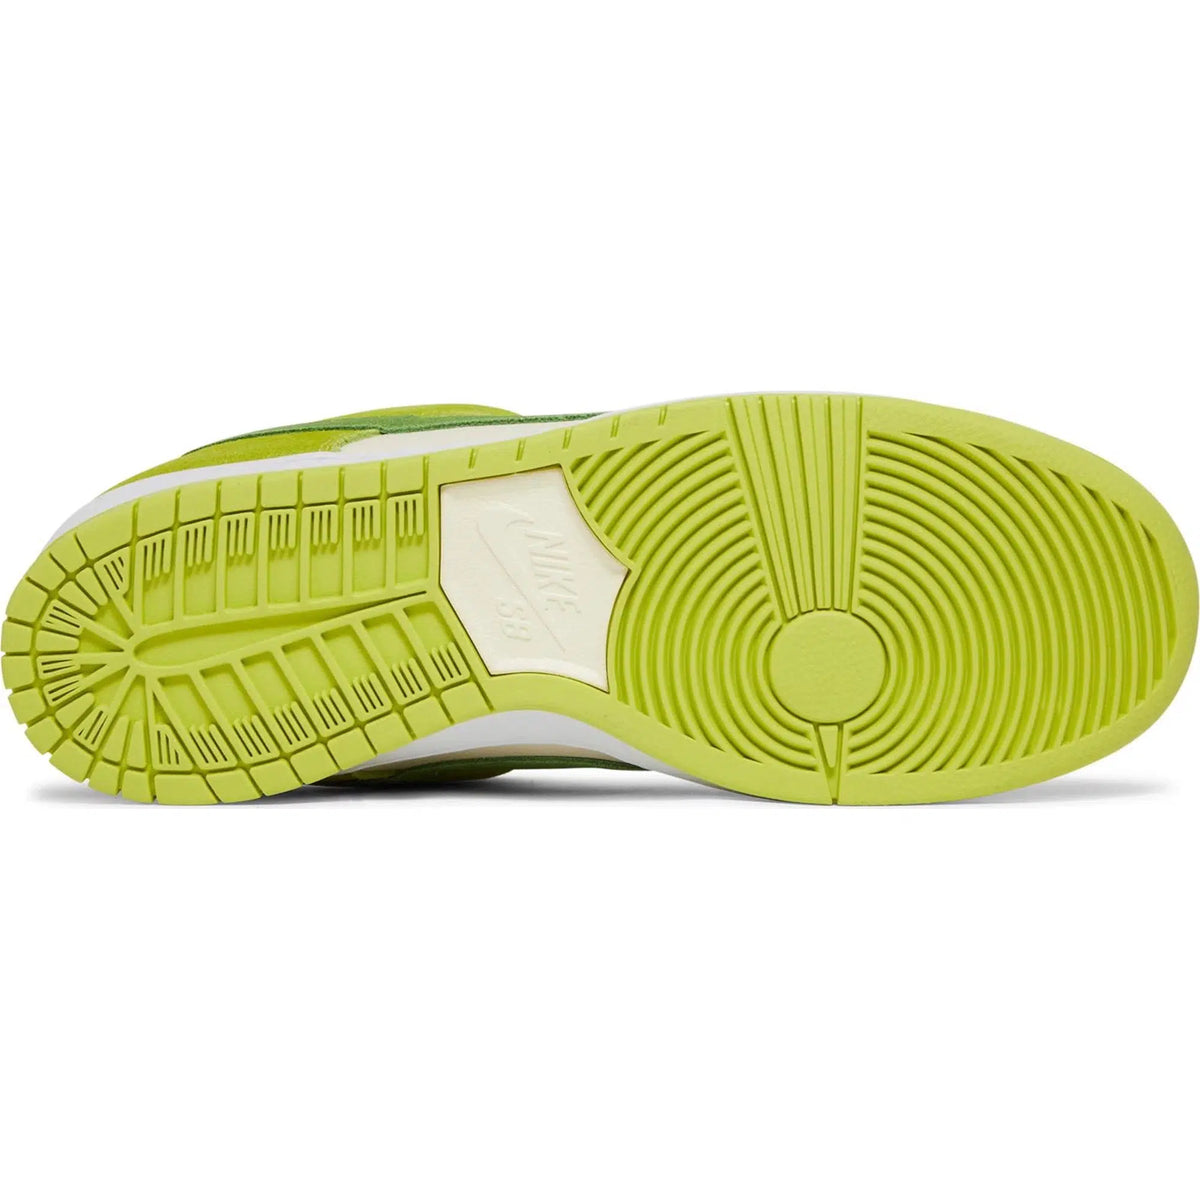 Nike SB Dunk Low Green Sour Apple | Waves Never Die | Nike | Sneakers